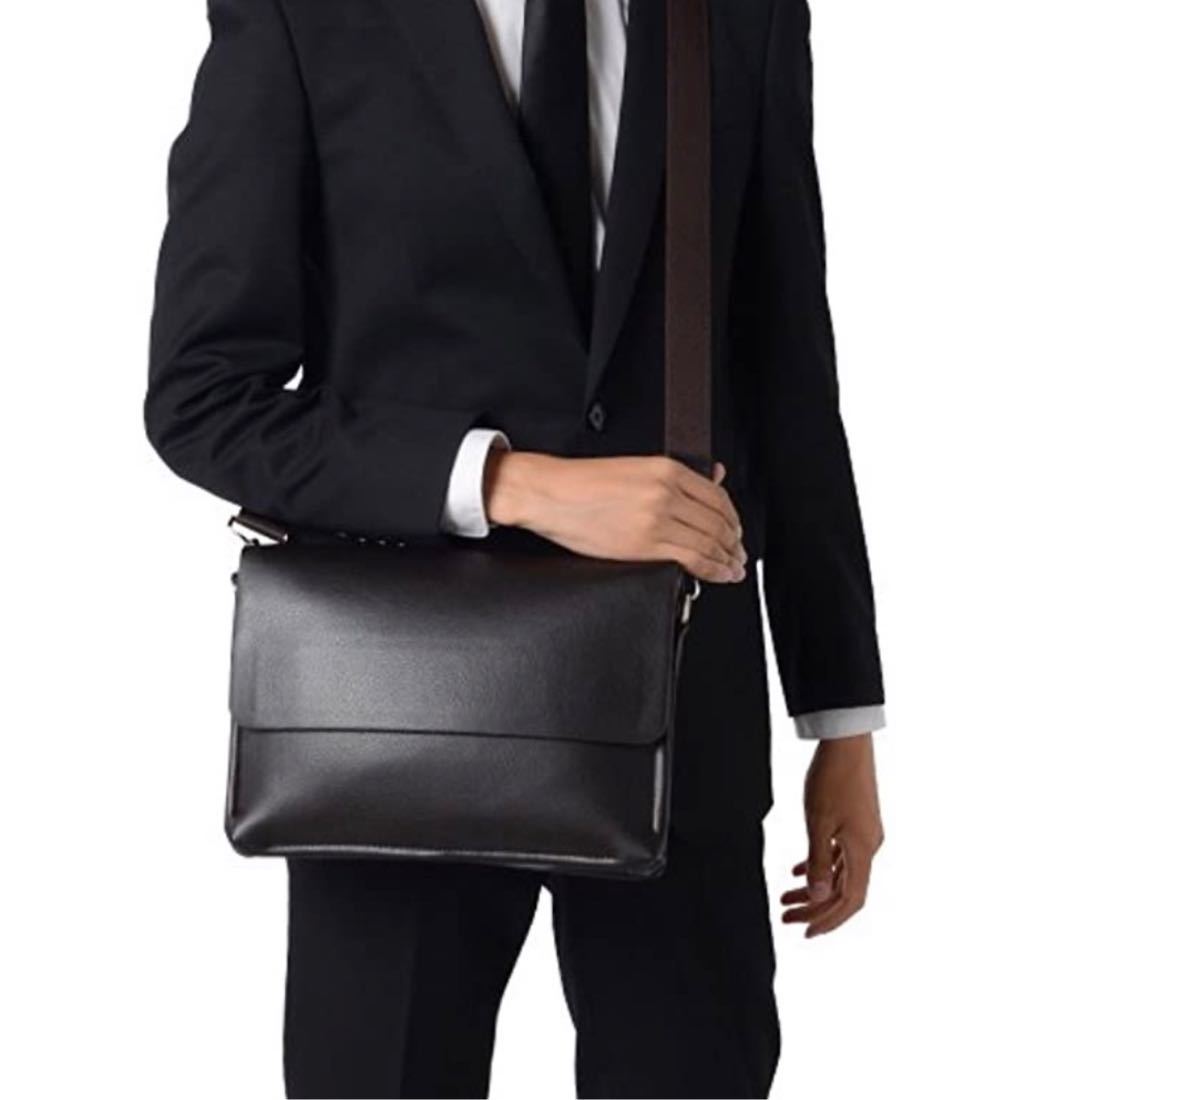 新品 ショルダーバッグ メンズ 男性 レザー A4 通勤 仕事 ビジネス 対応 斜め掛け 肩掛け ビジネスバッグ 斜め掛けバッグ